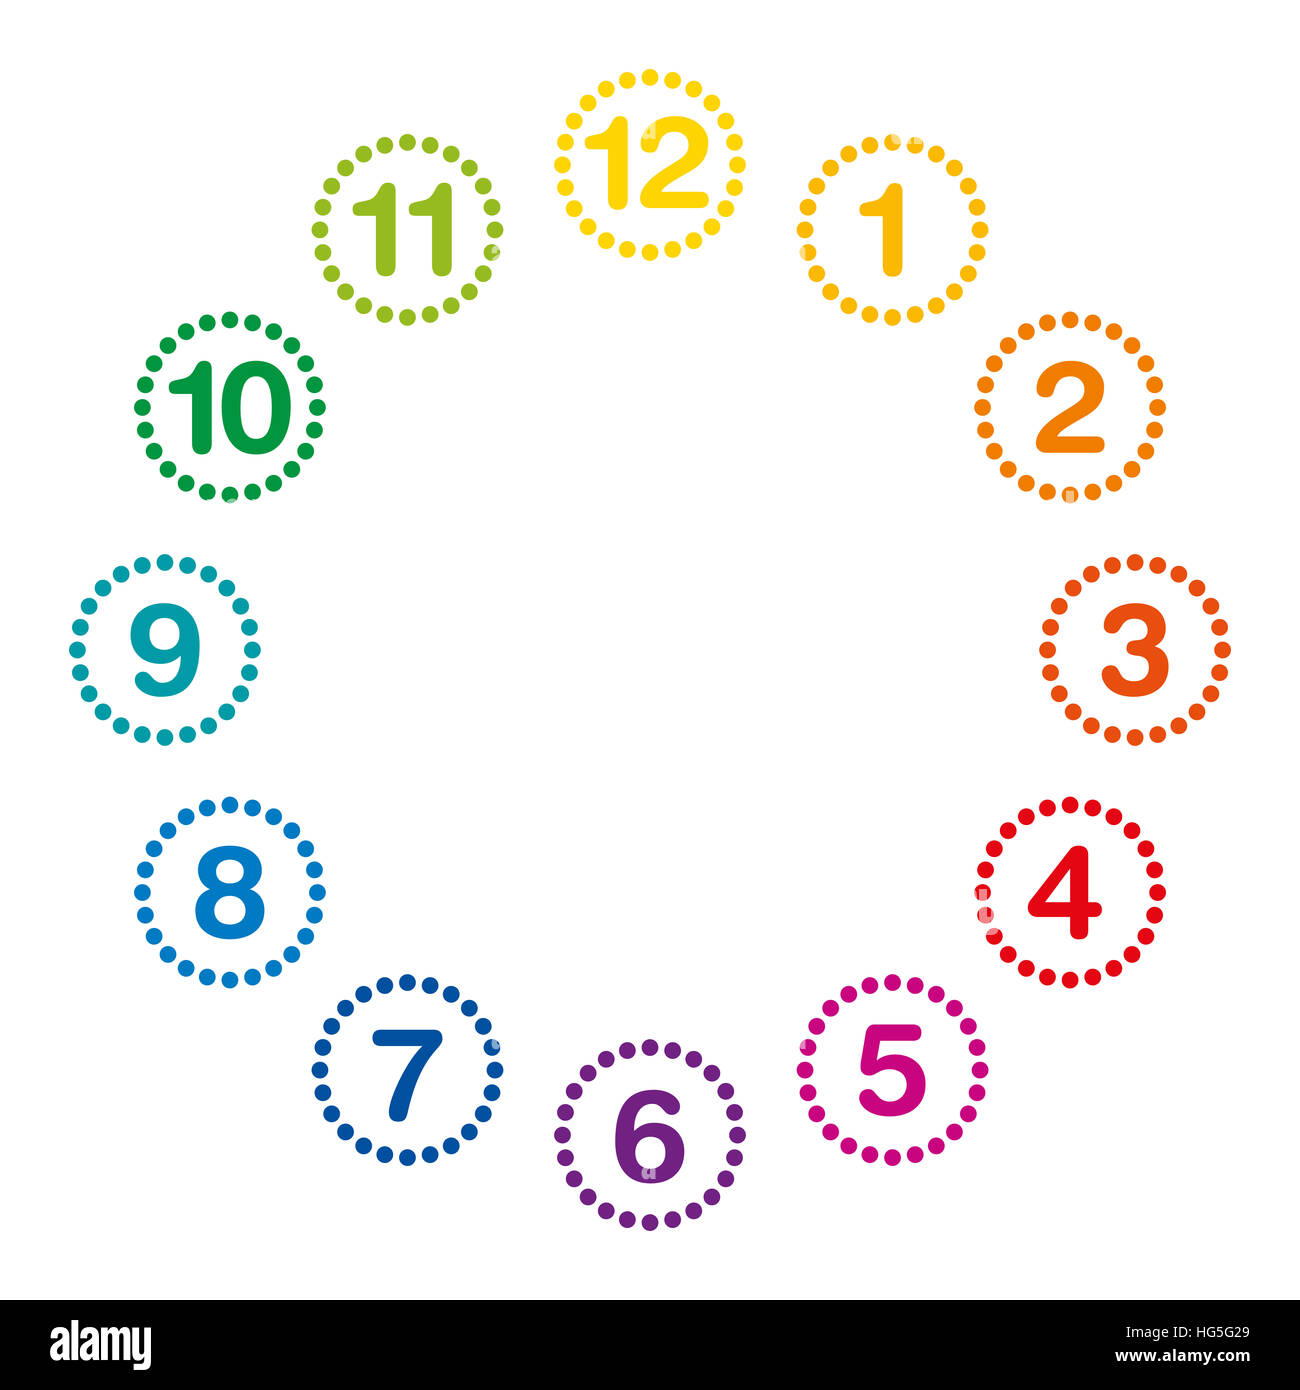 Reloj Con El Arco Iris De Colores Y Números De A 12 Reloj Analógico Y ...